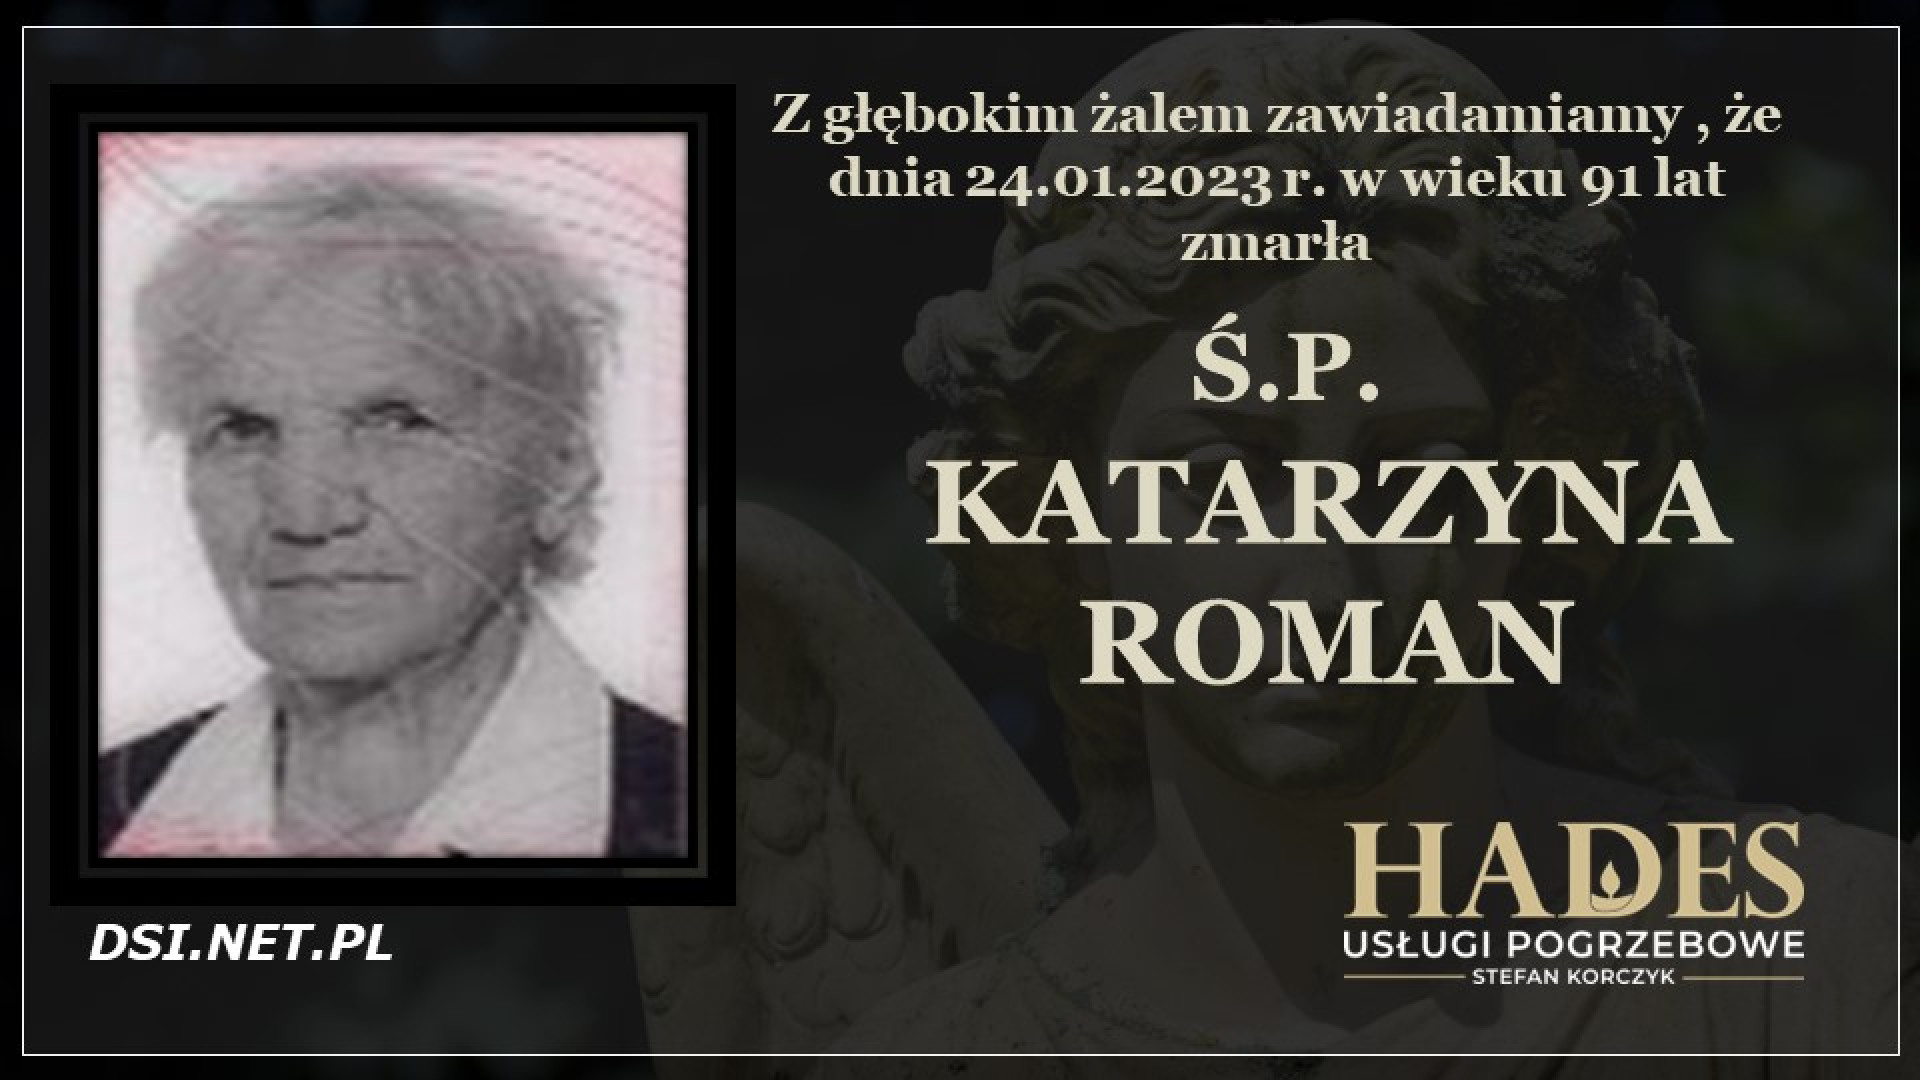 Ś.P. Katarzyna Roman